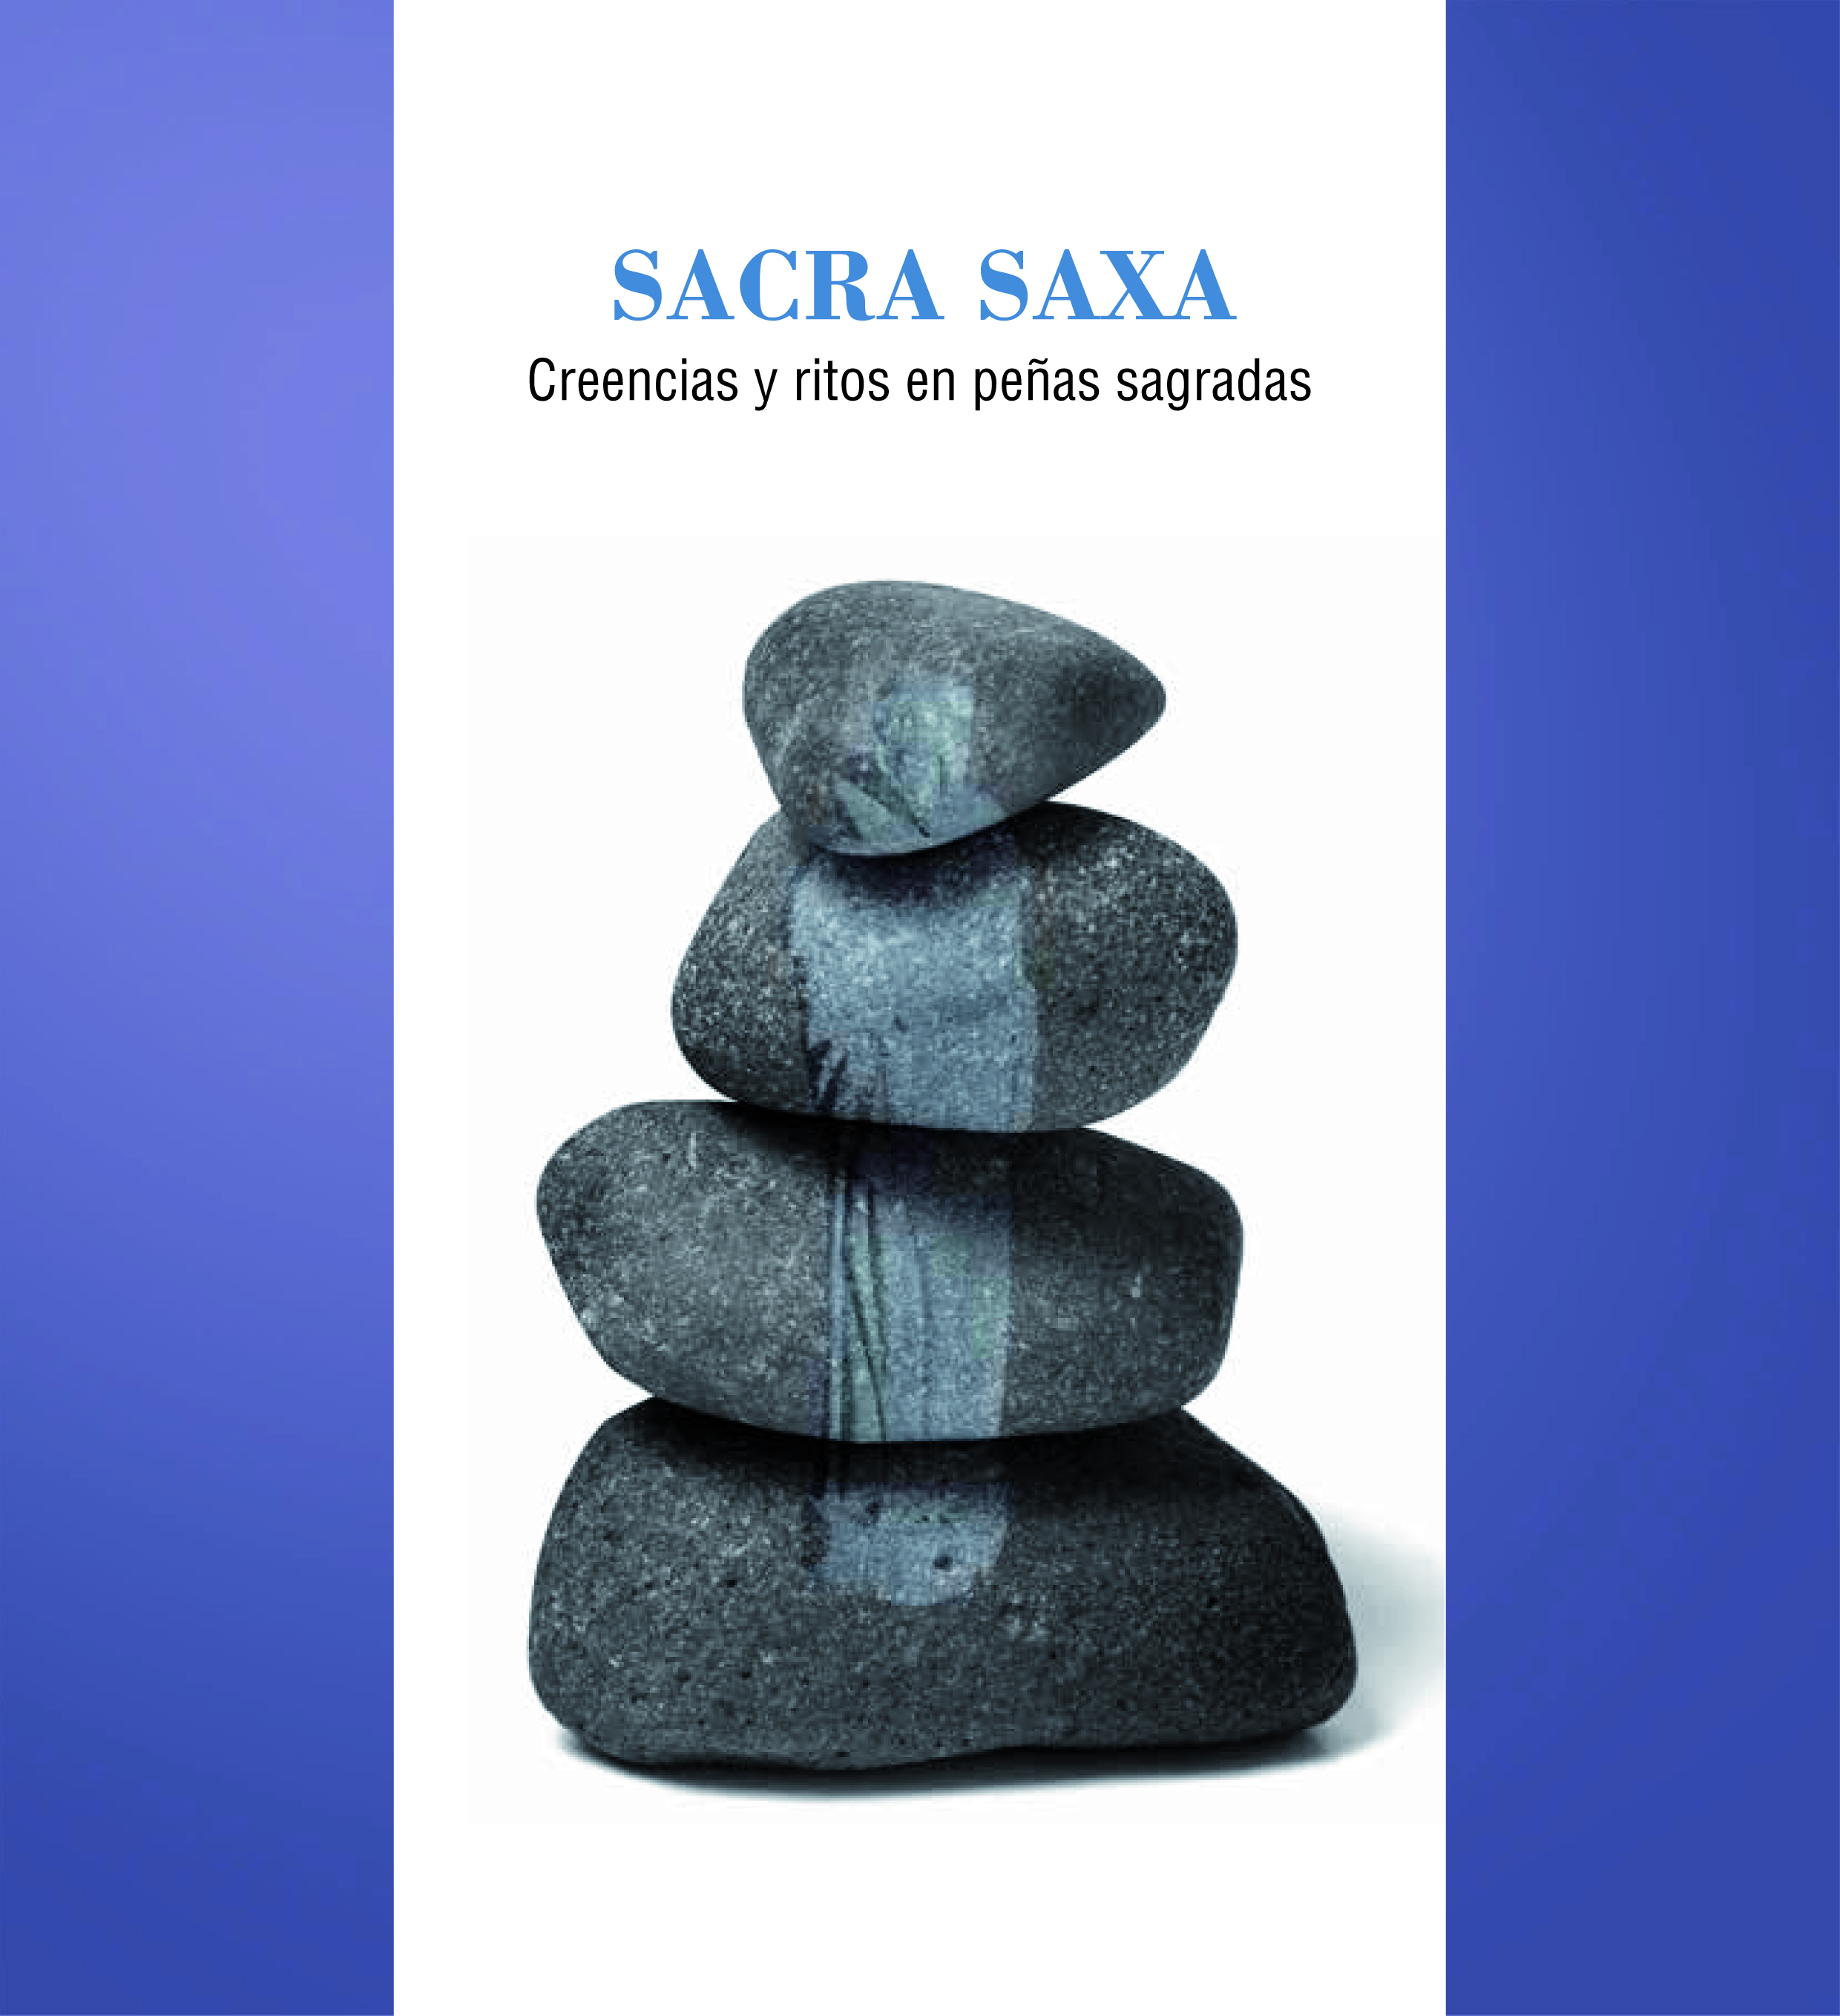 Sacra Saxa: creencias y ritos en peñas sagradas